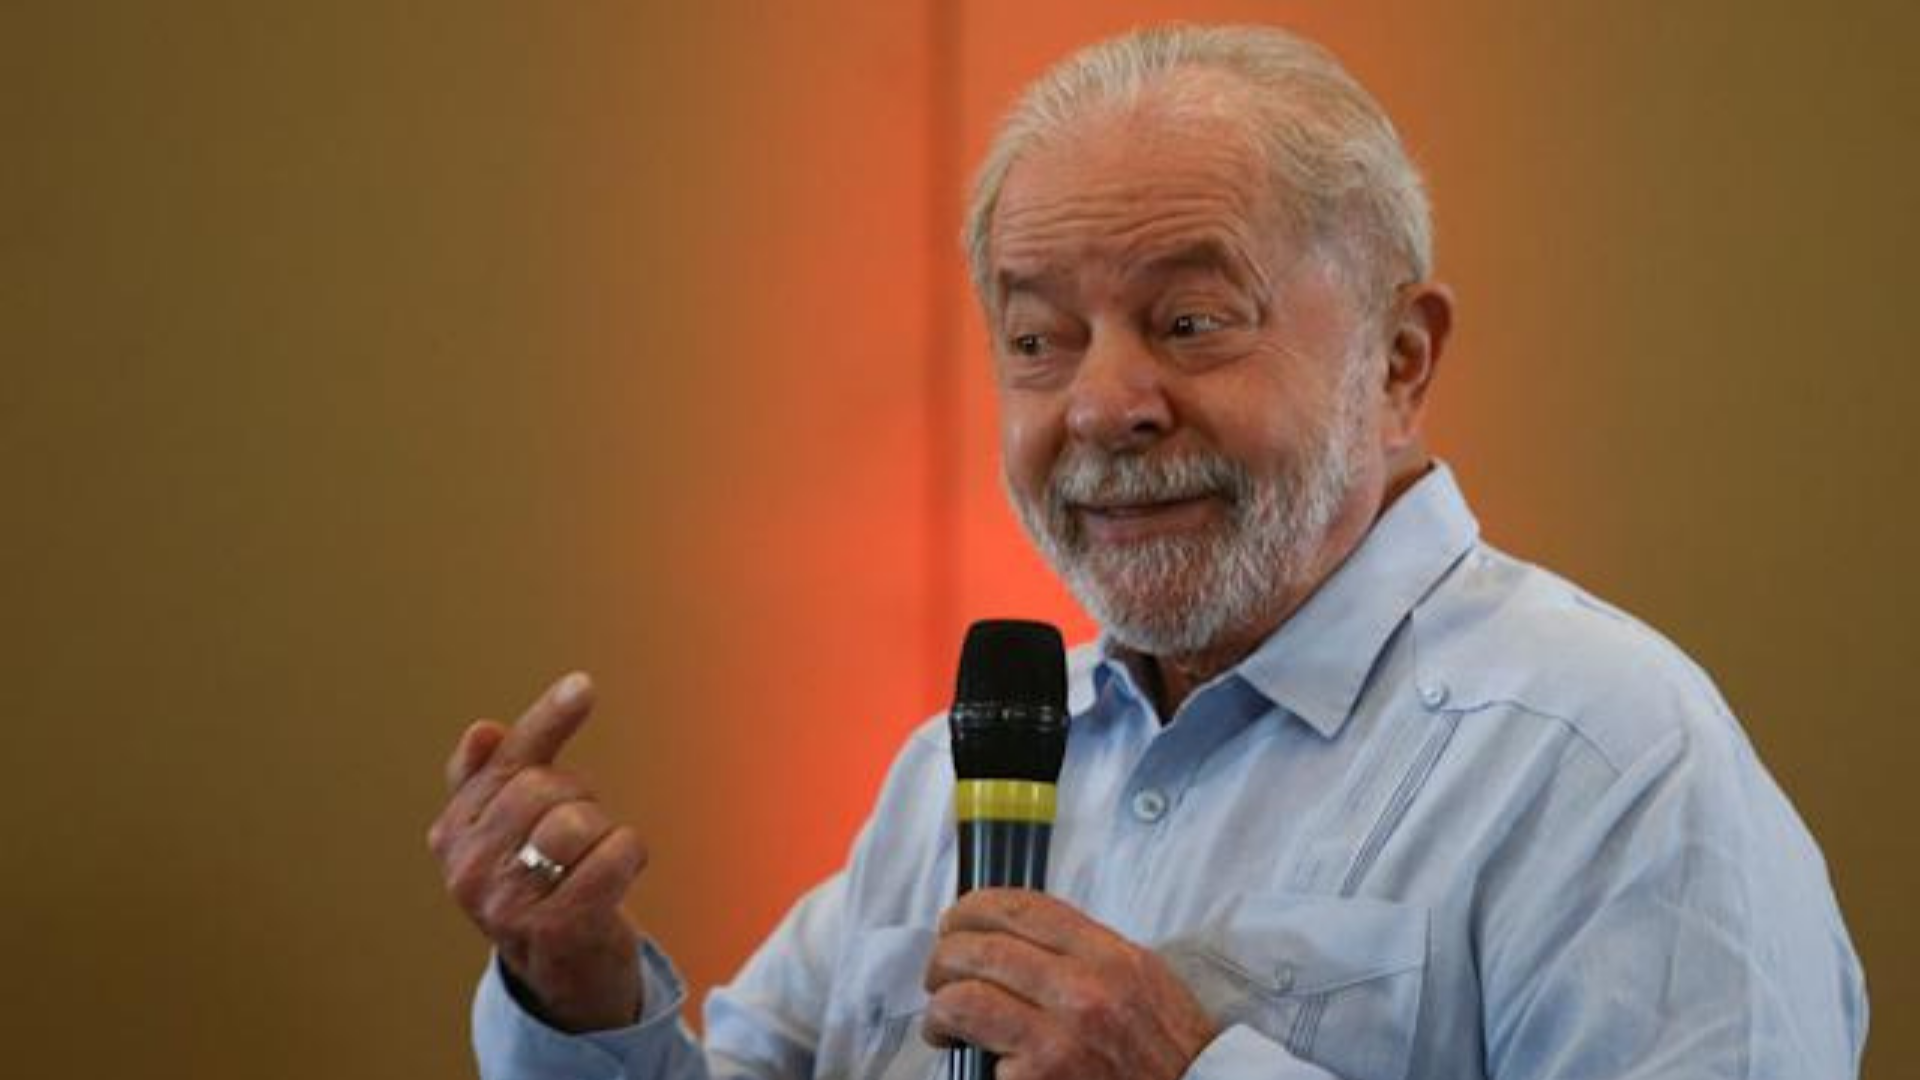 Foto do ex-presidente Lula falando ao microfone com um sorriso no rosto.